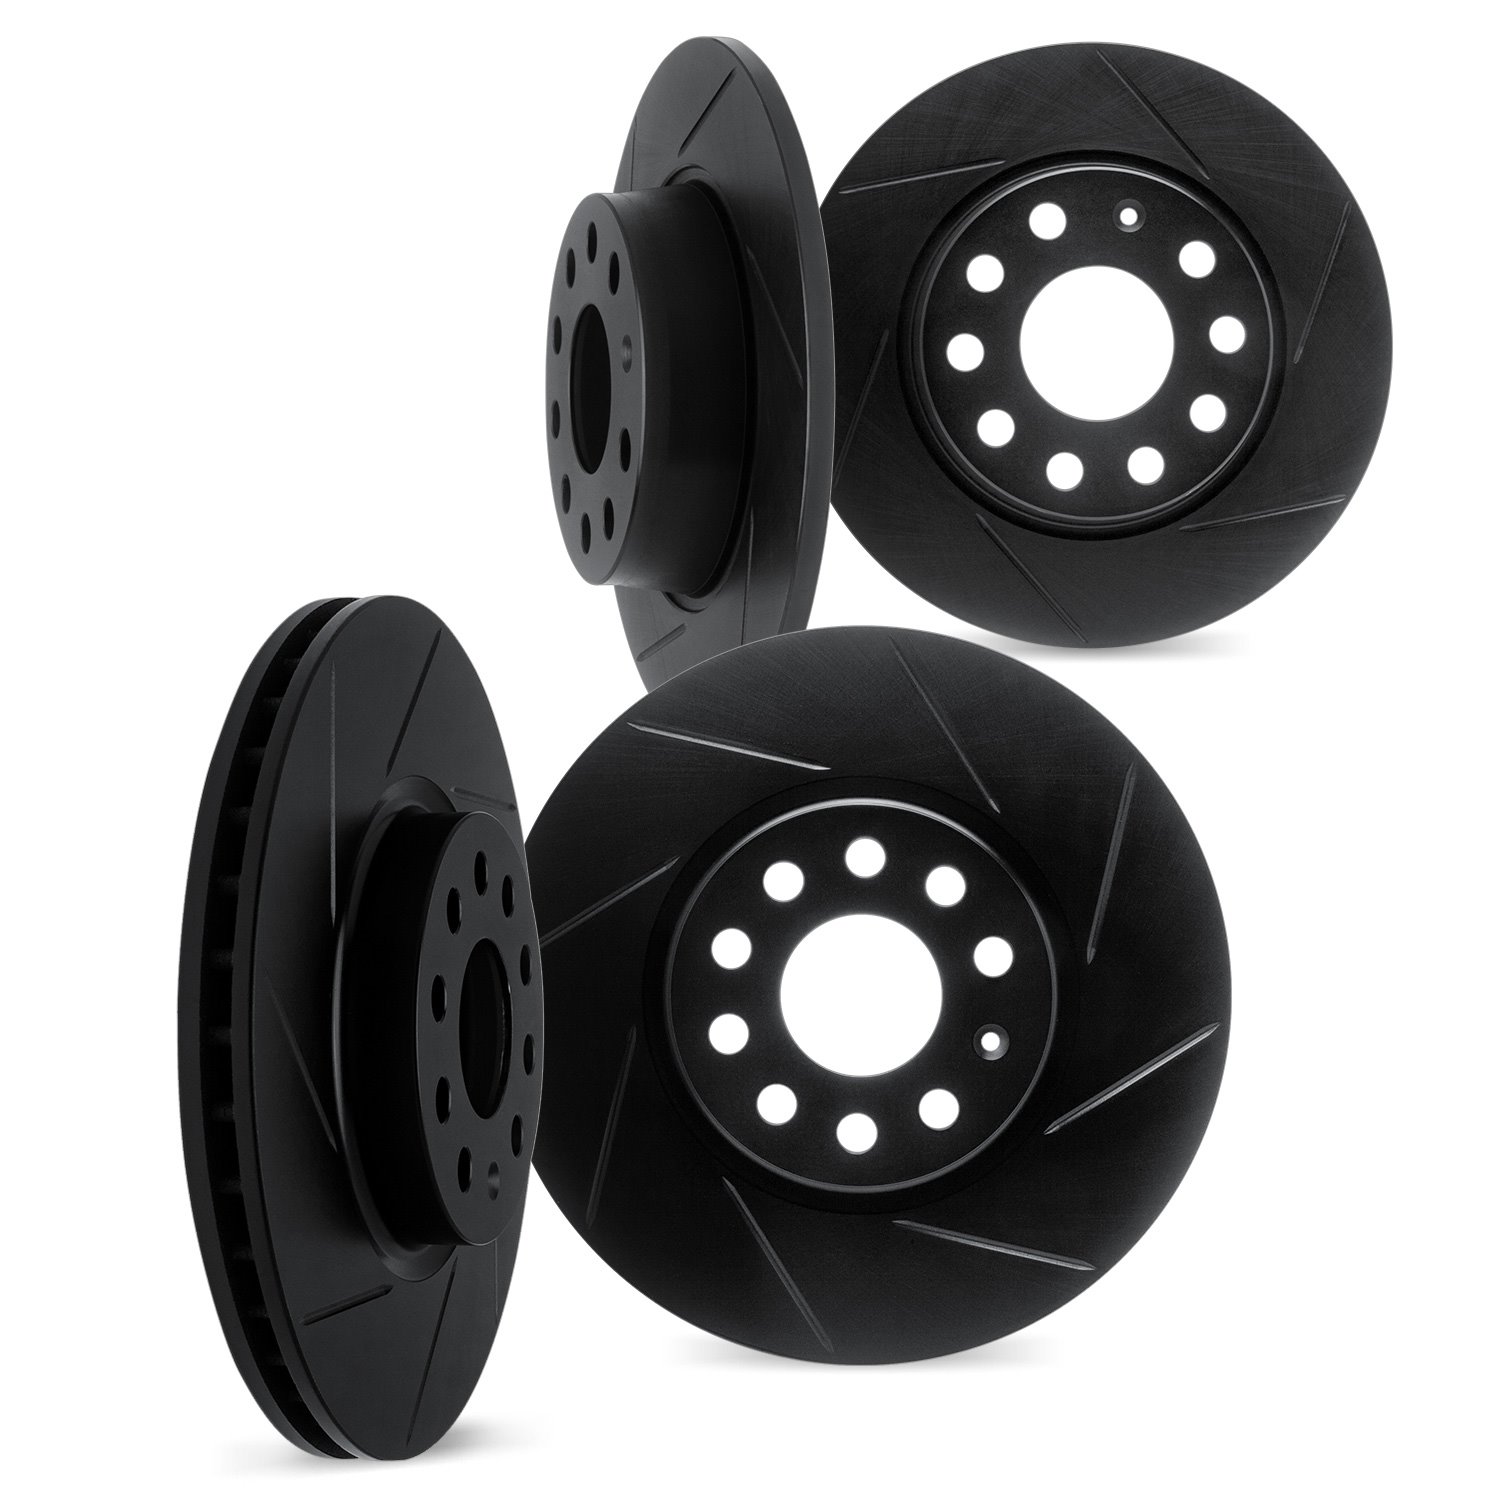 3004-03071 Slotted Brake Rotors [Black], Fits Select Kia/Hyundai/Genesis, Position: Front and Rear